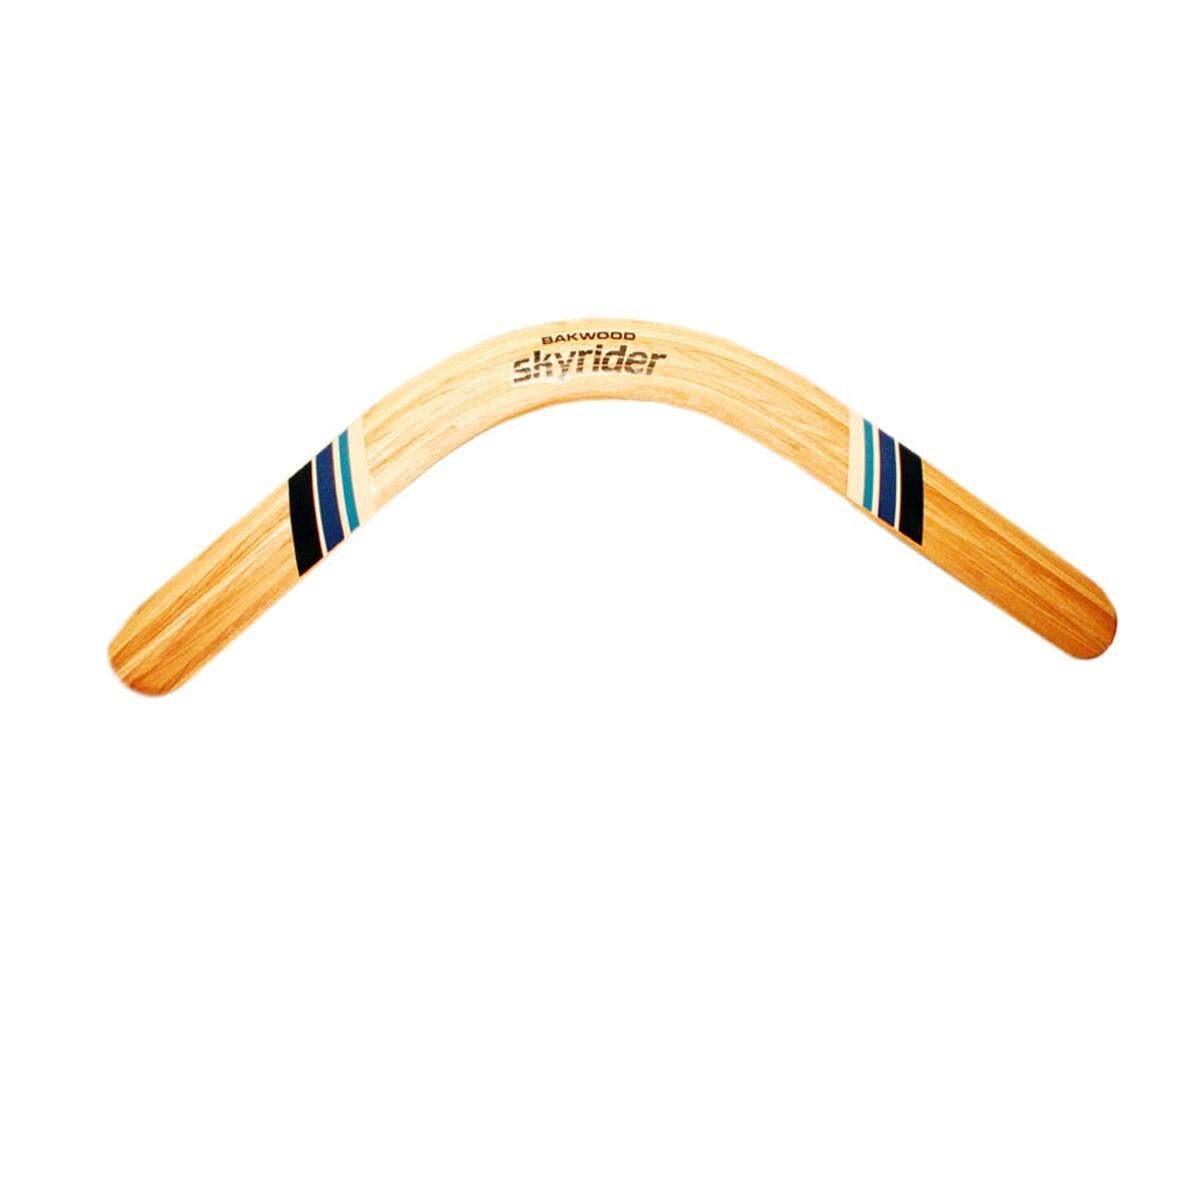 Wer gerne Bumerang spielt, kann dies natürlich nicht mit einem gewöhnlichen tun. Davro Boomerang stellt den "Skyrider" speziell für Linkshänder in England her.